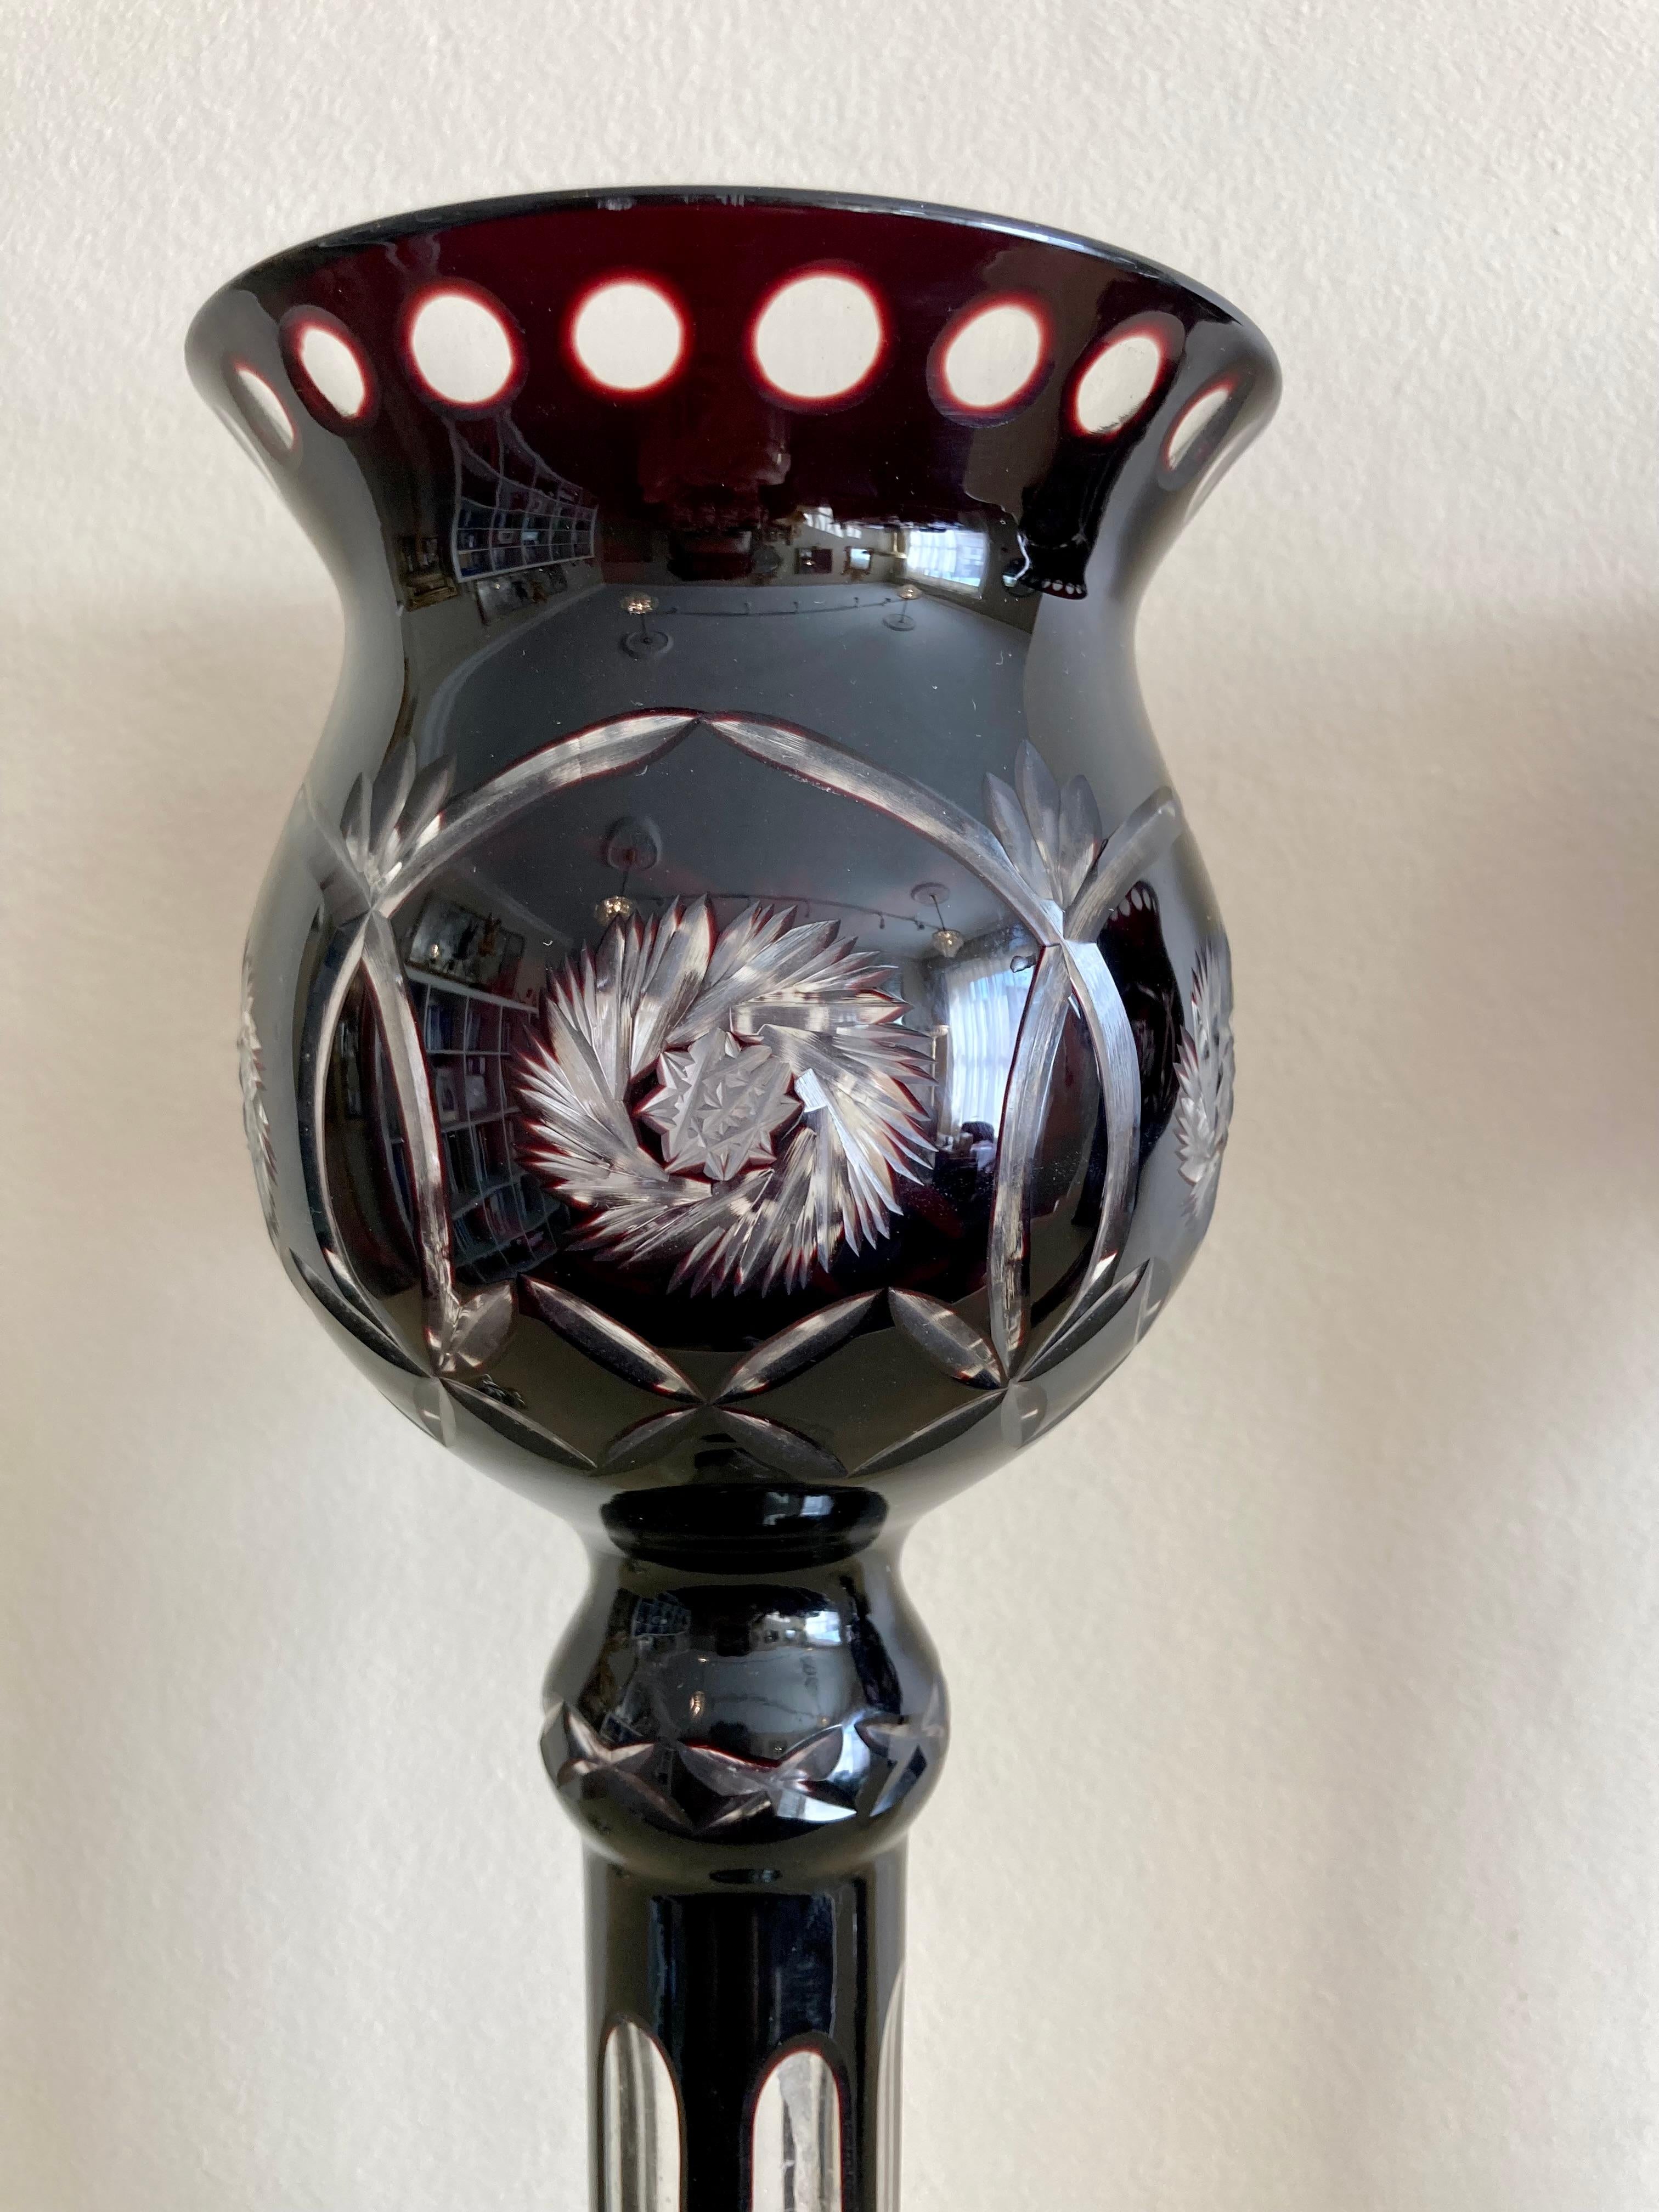 Ein auffälliges und ungewöhnliches Paar böhmischer Kerzenlampen aus geschliffenem Glas aus dem 19. Jahrhundert in tiefer Preiselbeerfarbe

Höhe 28cm

Breite 9.5 cm

Während der Renaissance und des Hochbarocks - vom 16. Jahrhundert bis etwa 1750 -